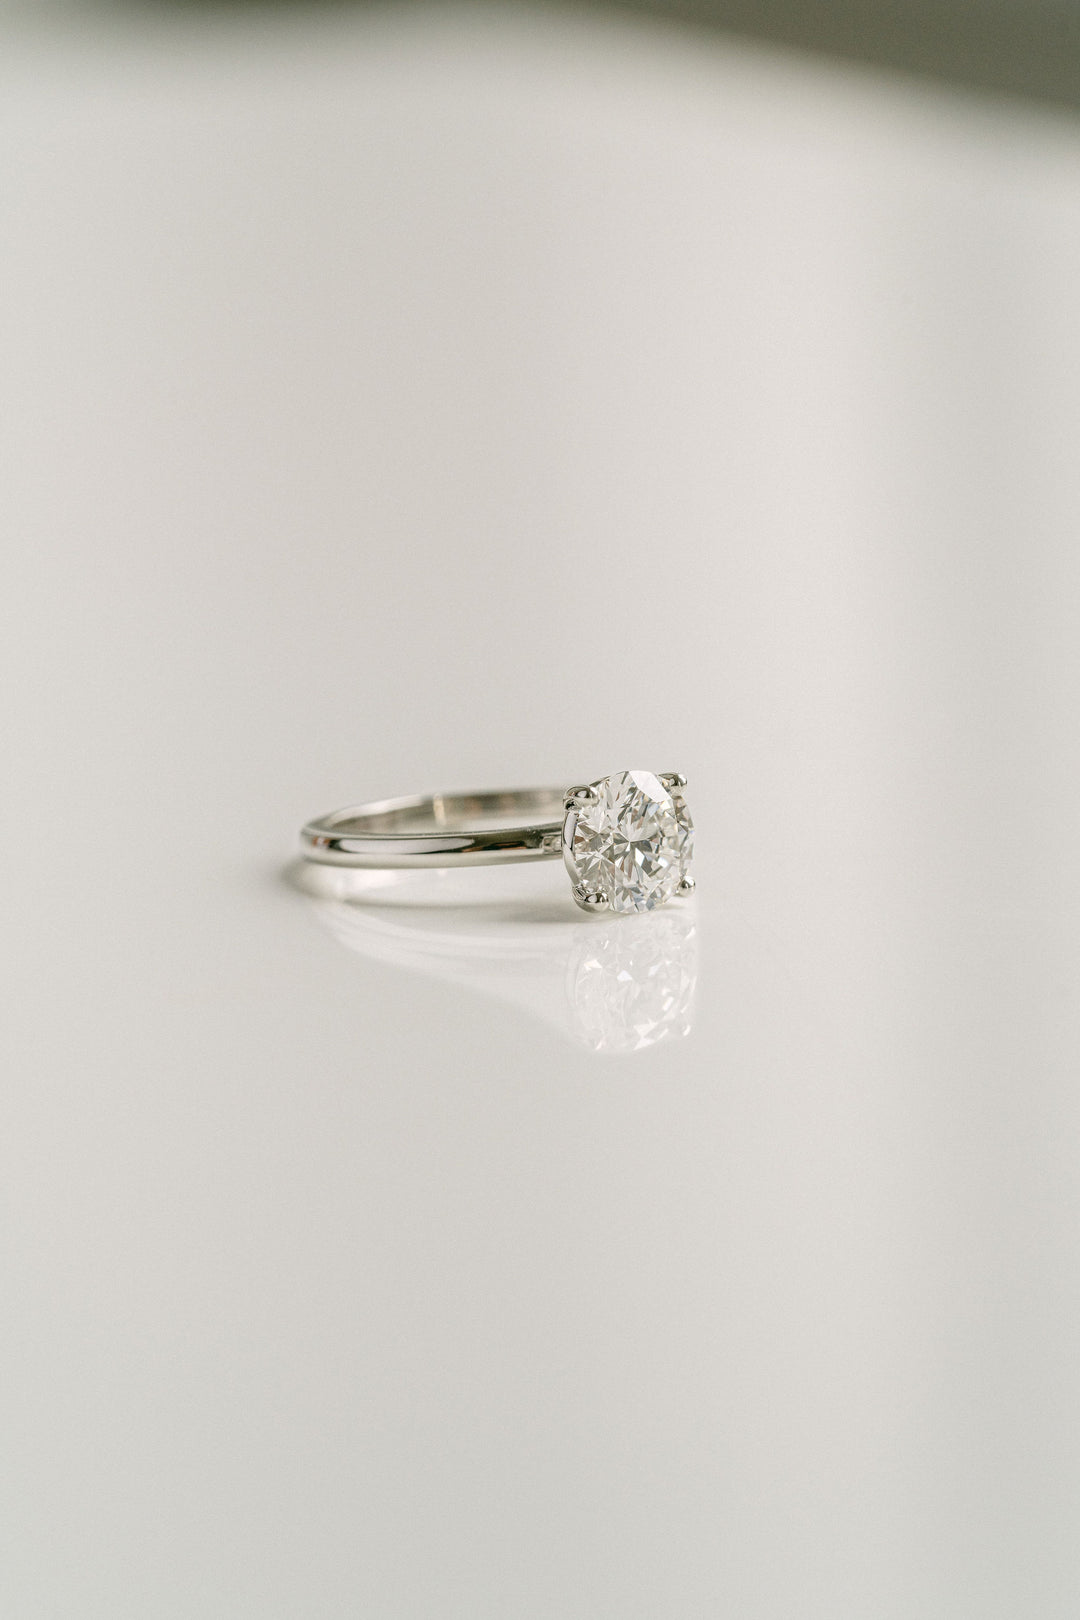 Round Brilliant Diamond Solitaire Engagement Ring, Platinum